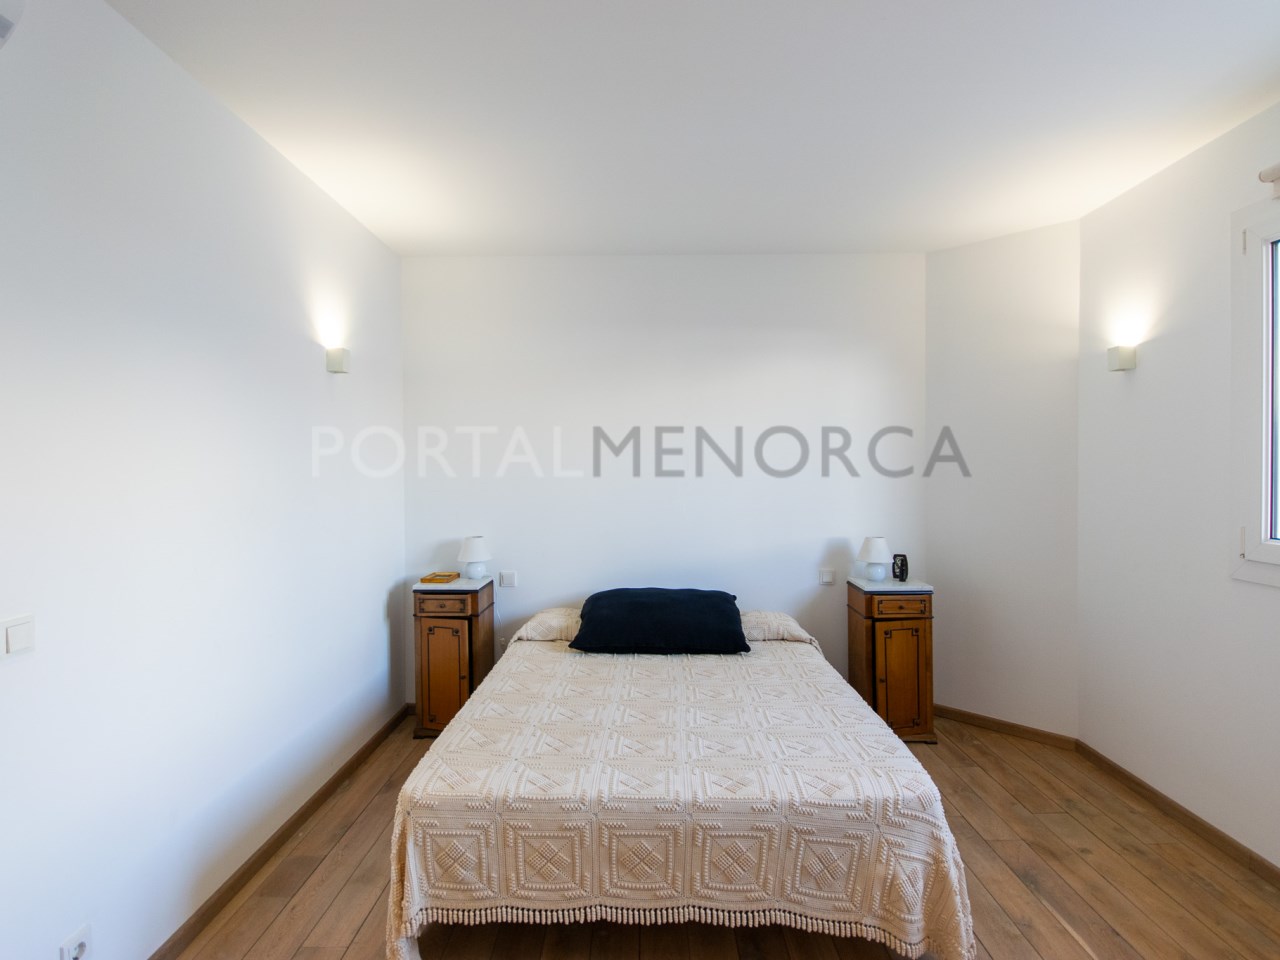 Dormitorio doble en céntrica casa de pueblo en Es Mercadal